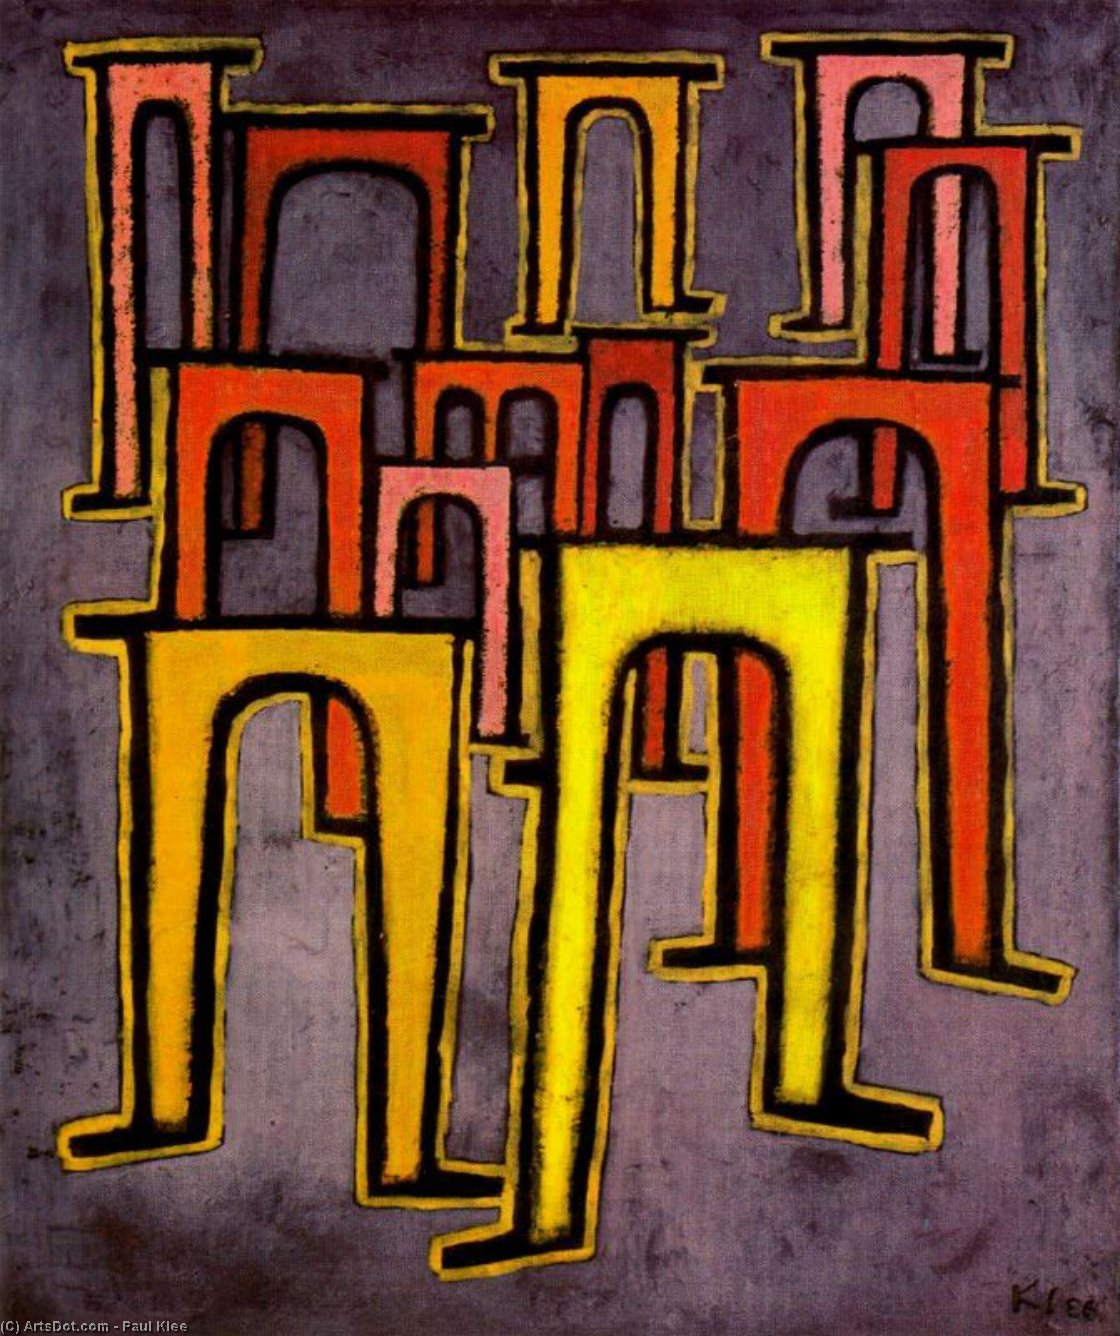 Wikoo.org - موسوعة الفنون الجميلة - اللوحة، العمل الفني Paul Klee - Description of a scene. Revolution of the Viaduct